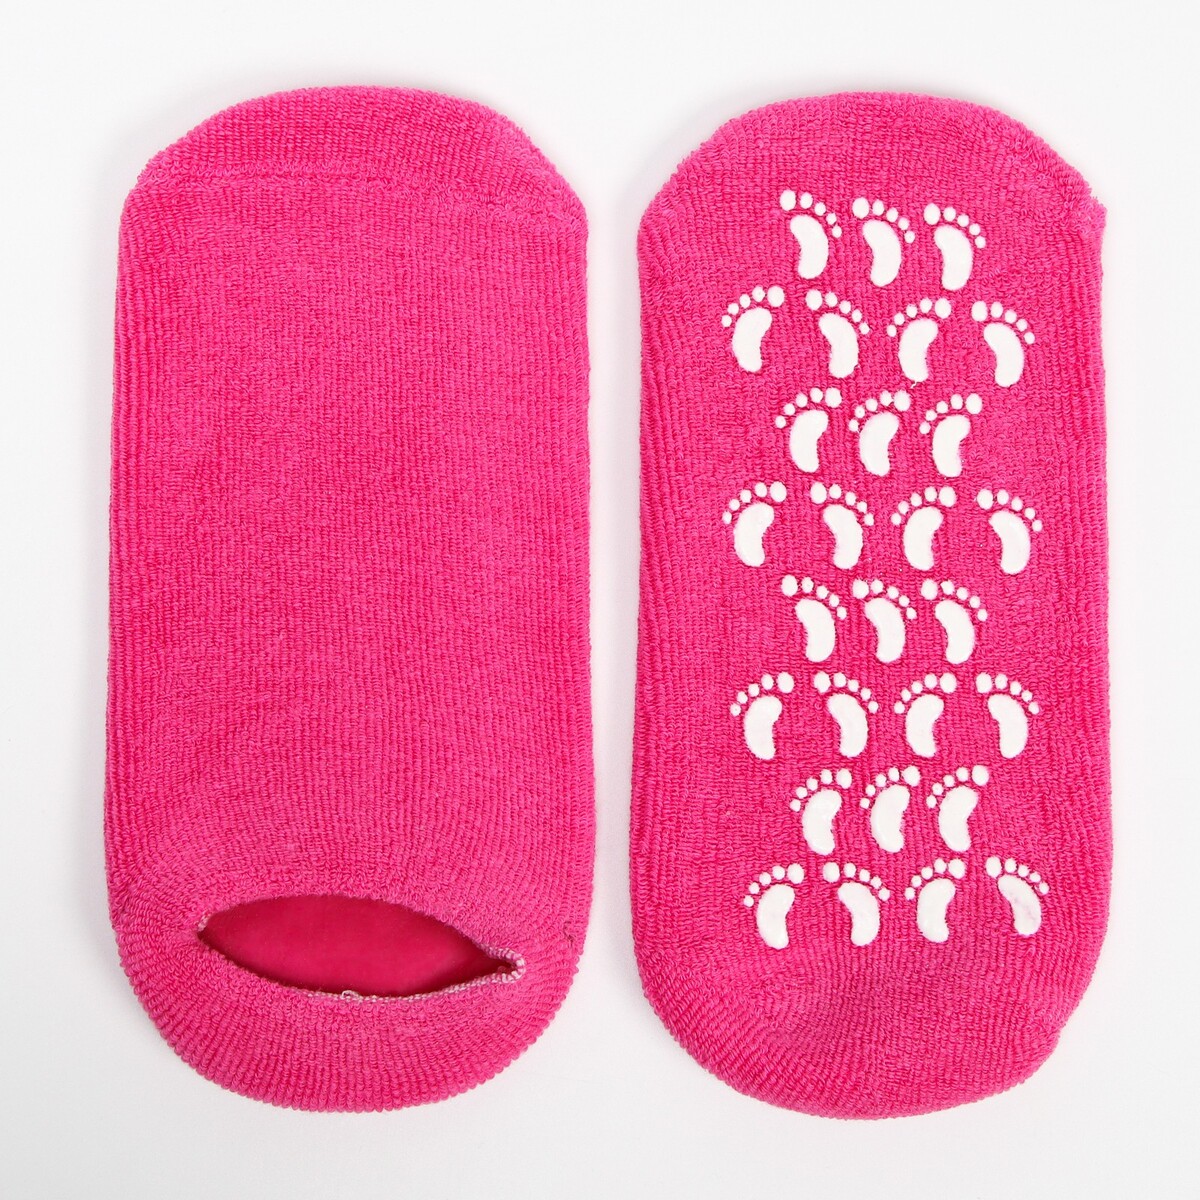 Премиум spa-носочки на основе натуральных масел